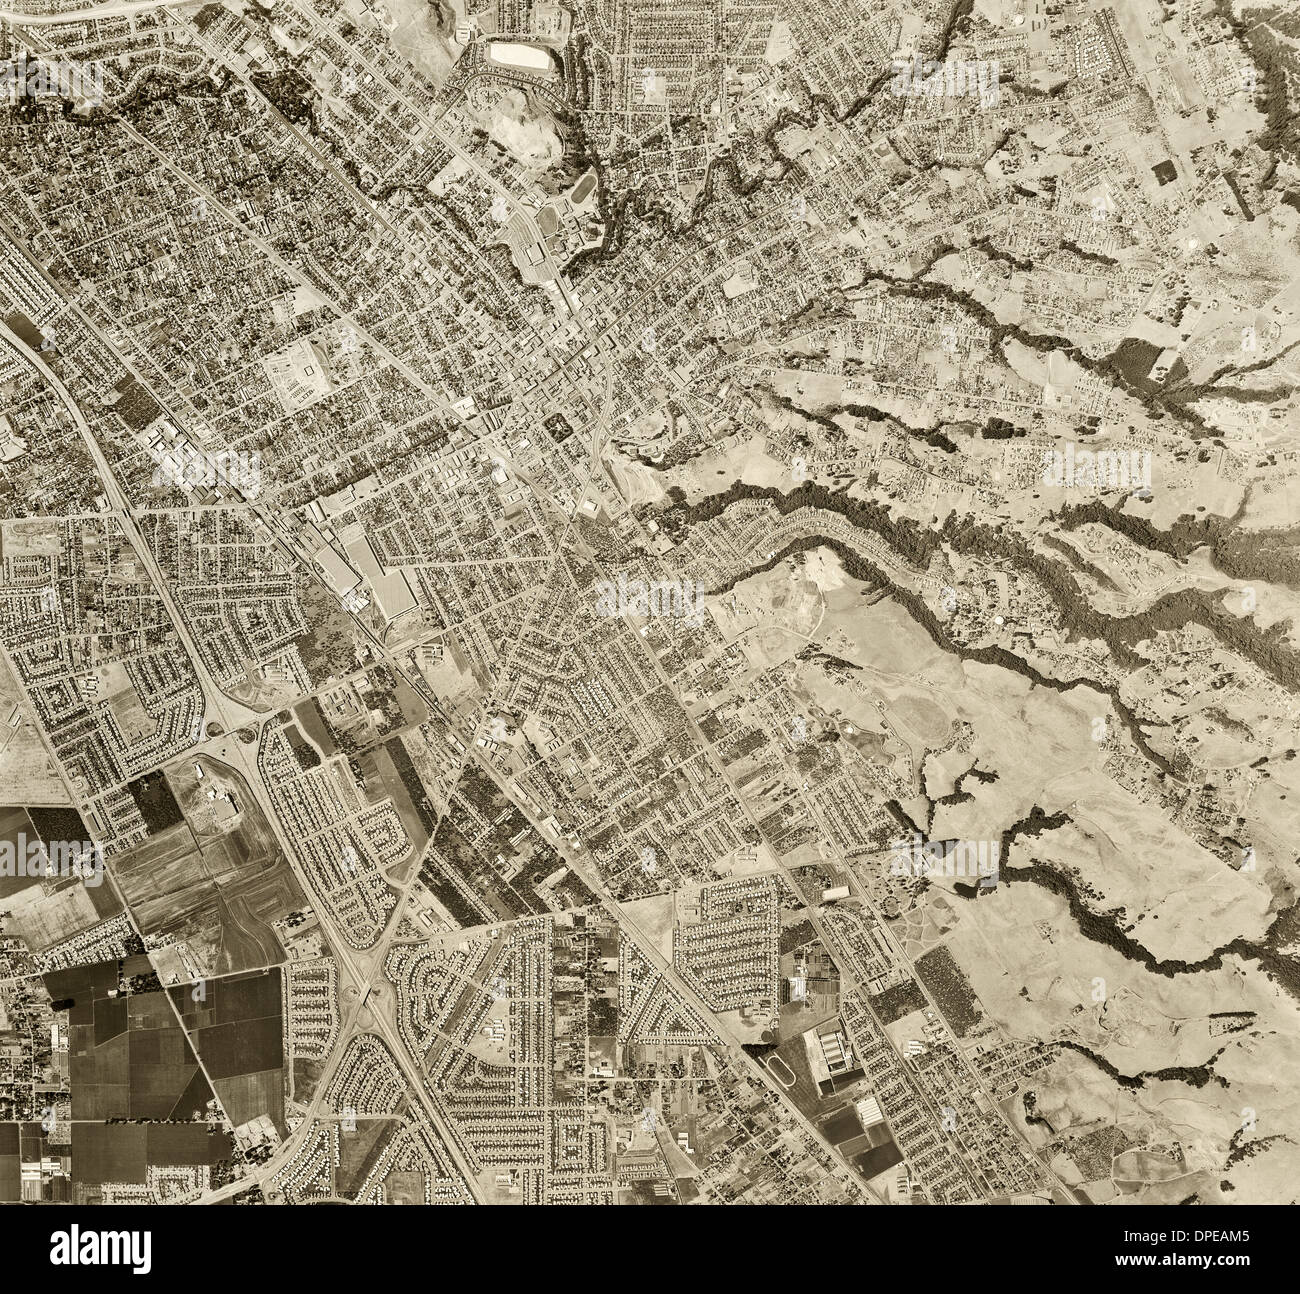 Fotografía aérea histórica Hayward, el condado de Alameda, California, 1958 Foto de stock